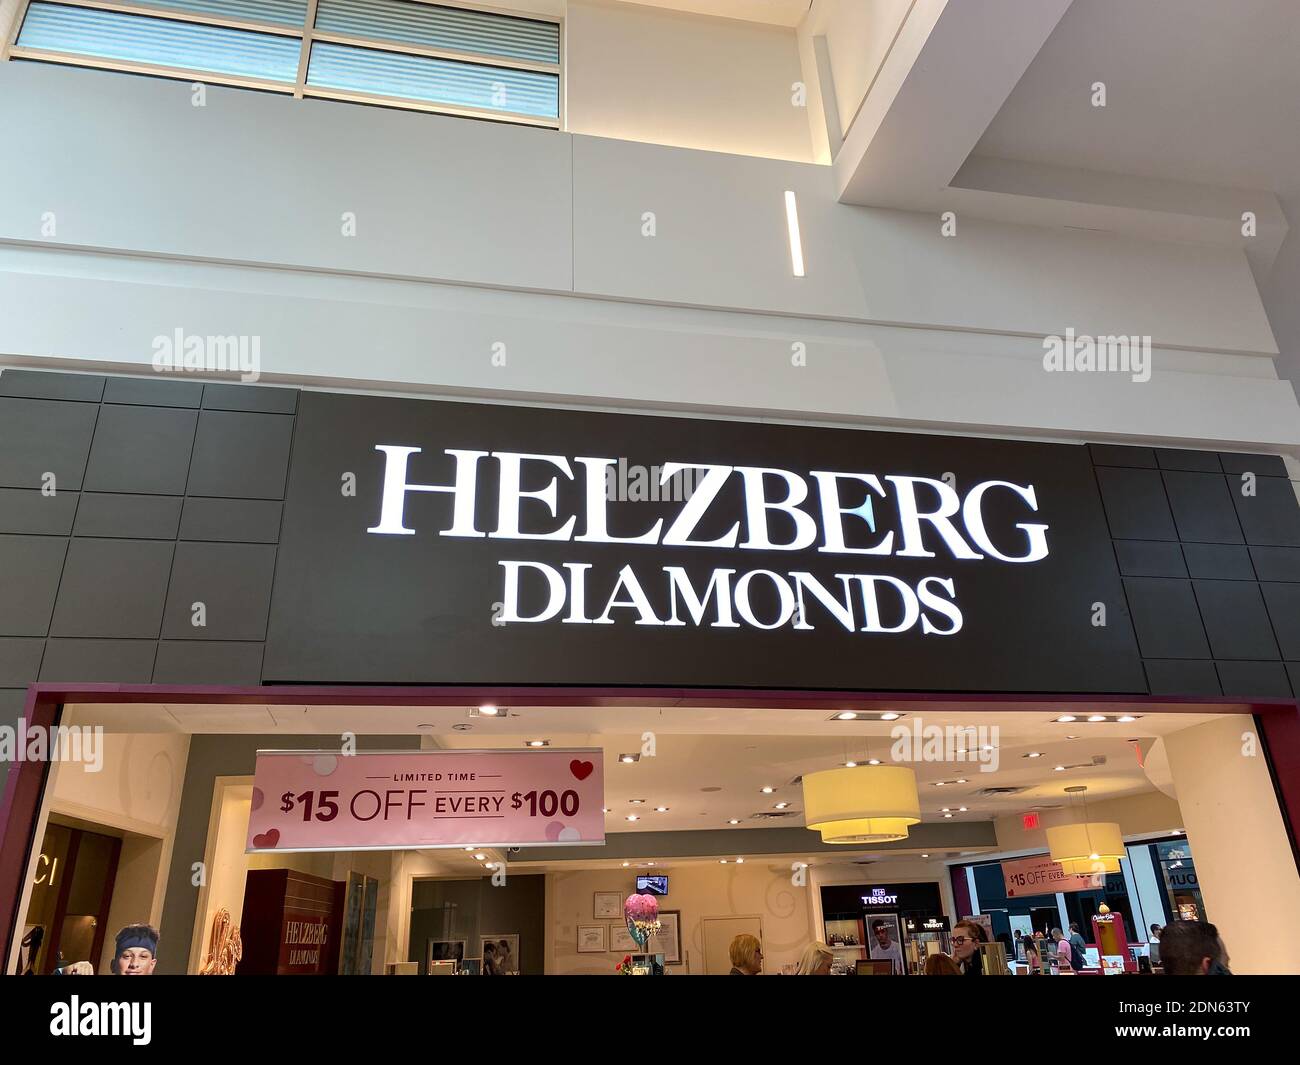 Orlando, FL USA - 17. Februar 2020: Die Helzberg Diamonds-Schaufenster in der Millenia Mall in Orlando, Florida. Stockfoto